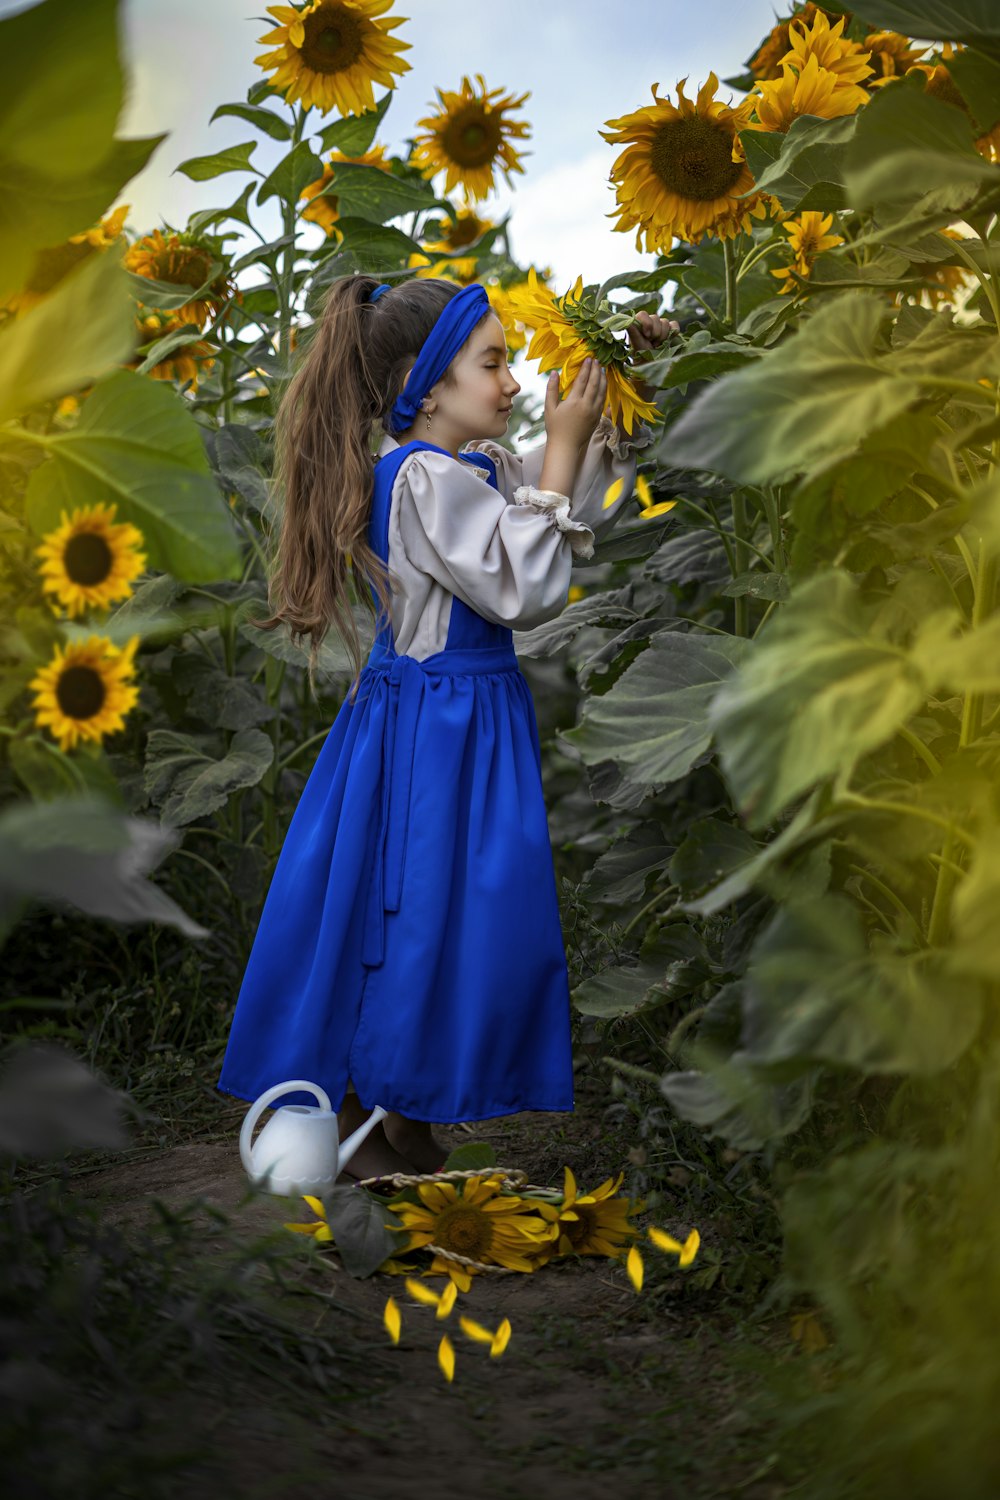 파란 드레스를 입은 어린 소녀가 해바라기 밭에 서 있다